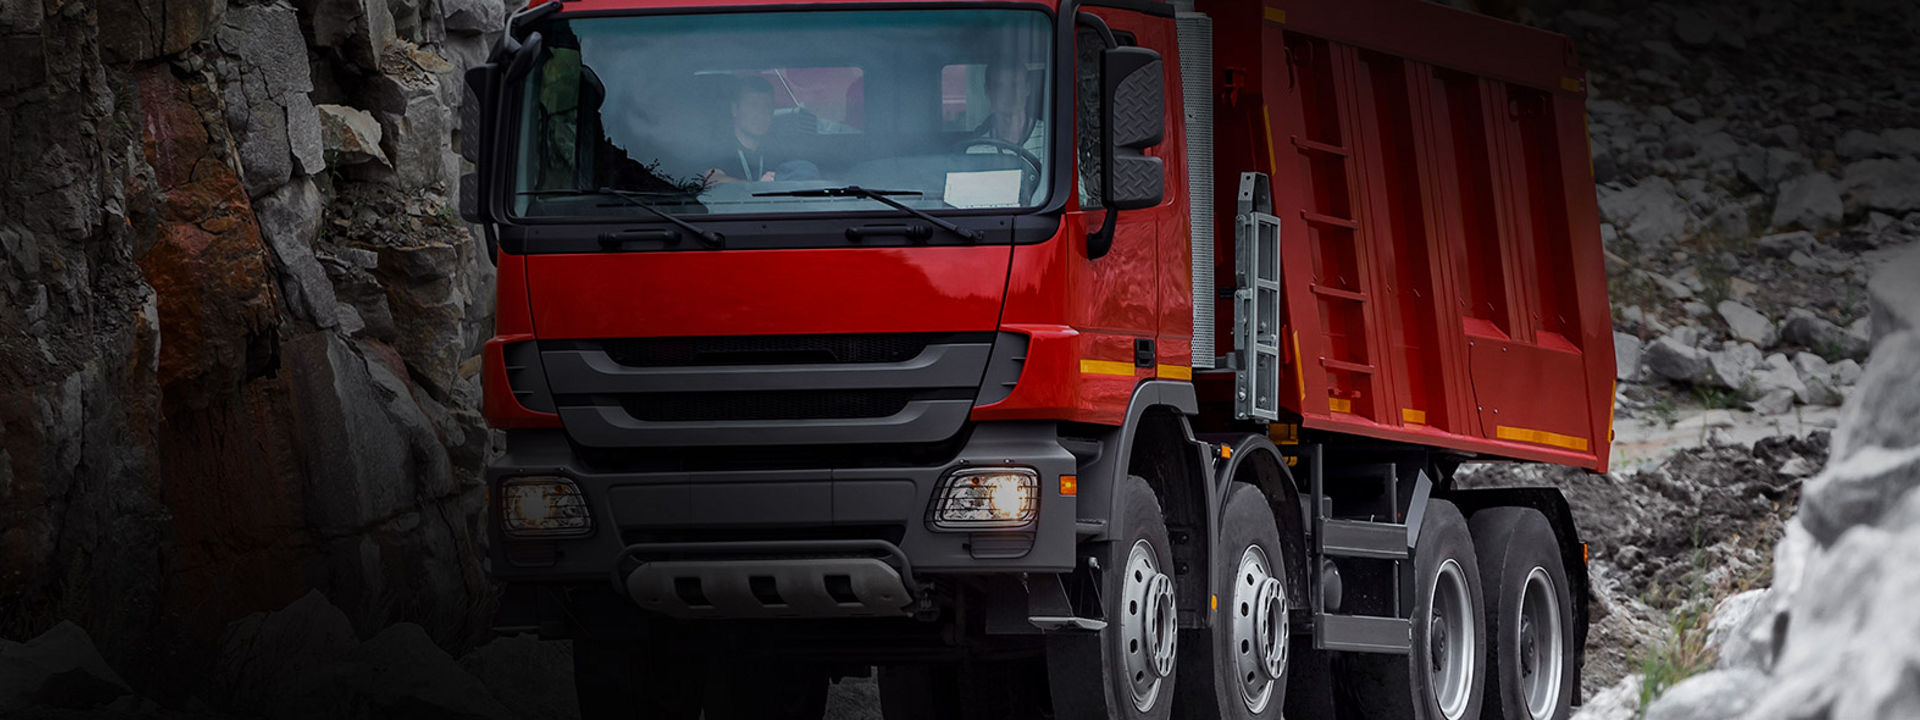 Esta imagem mostra a frente de um camião num local de trabalho com pneus Bridgestone on/off road utilização severa.